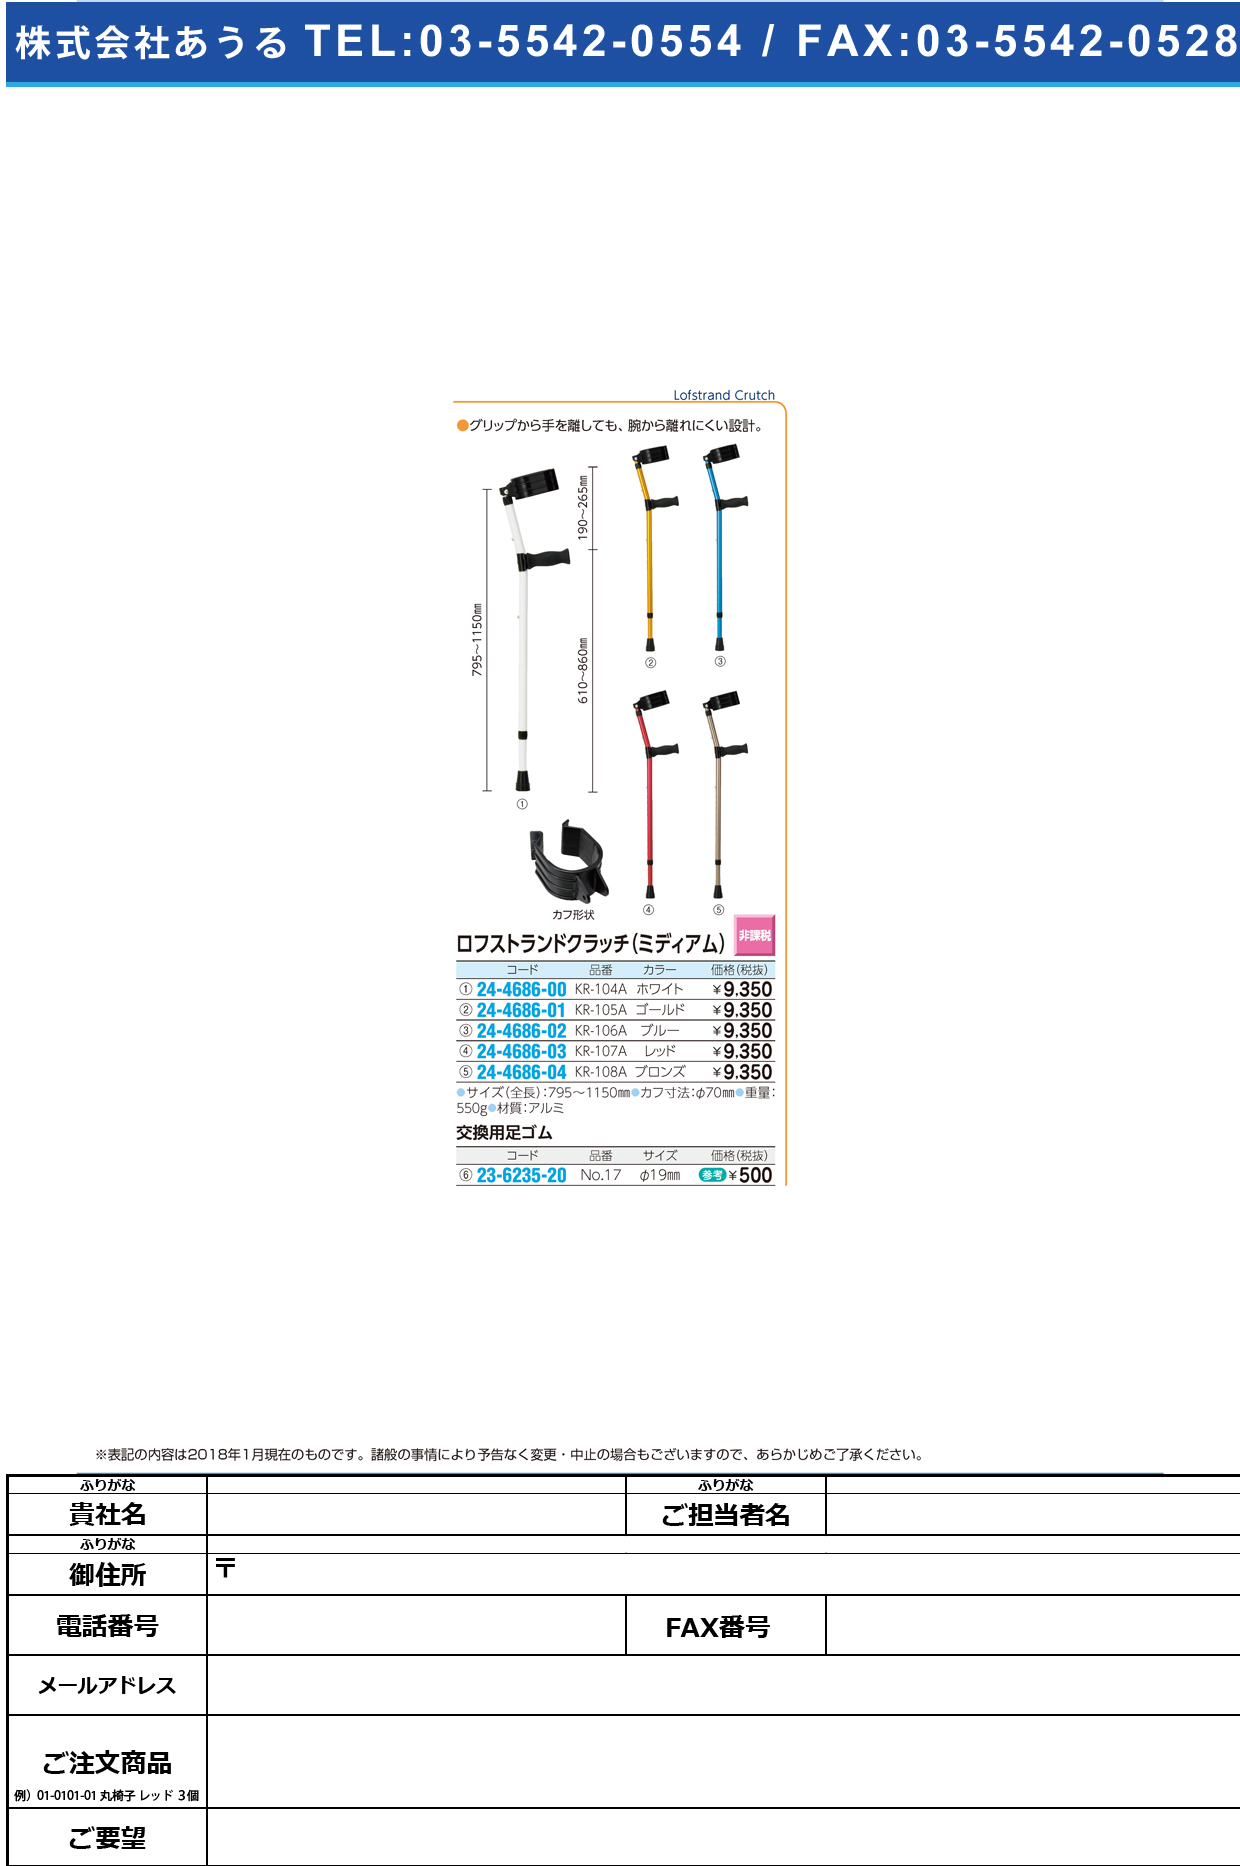 (24-4686-02)ロフストランドクラッチ（ミディアム） KR-106A(ﾌﾞﾙｰ) ﾛﾌｽﾄﾗﾝﾄﾞｸﾗｯﾁ【1本単位】【2019年カタログ商品】